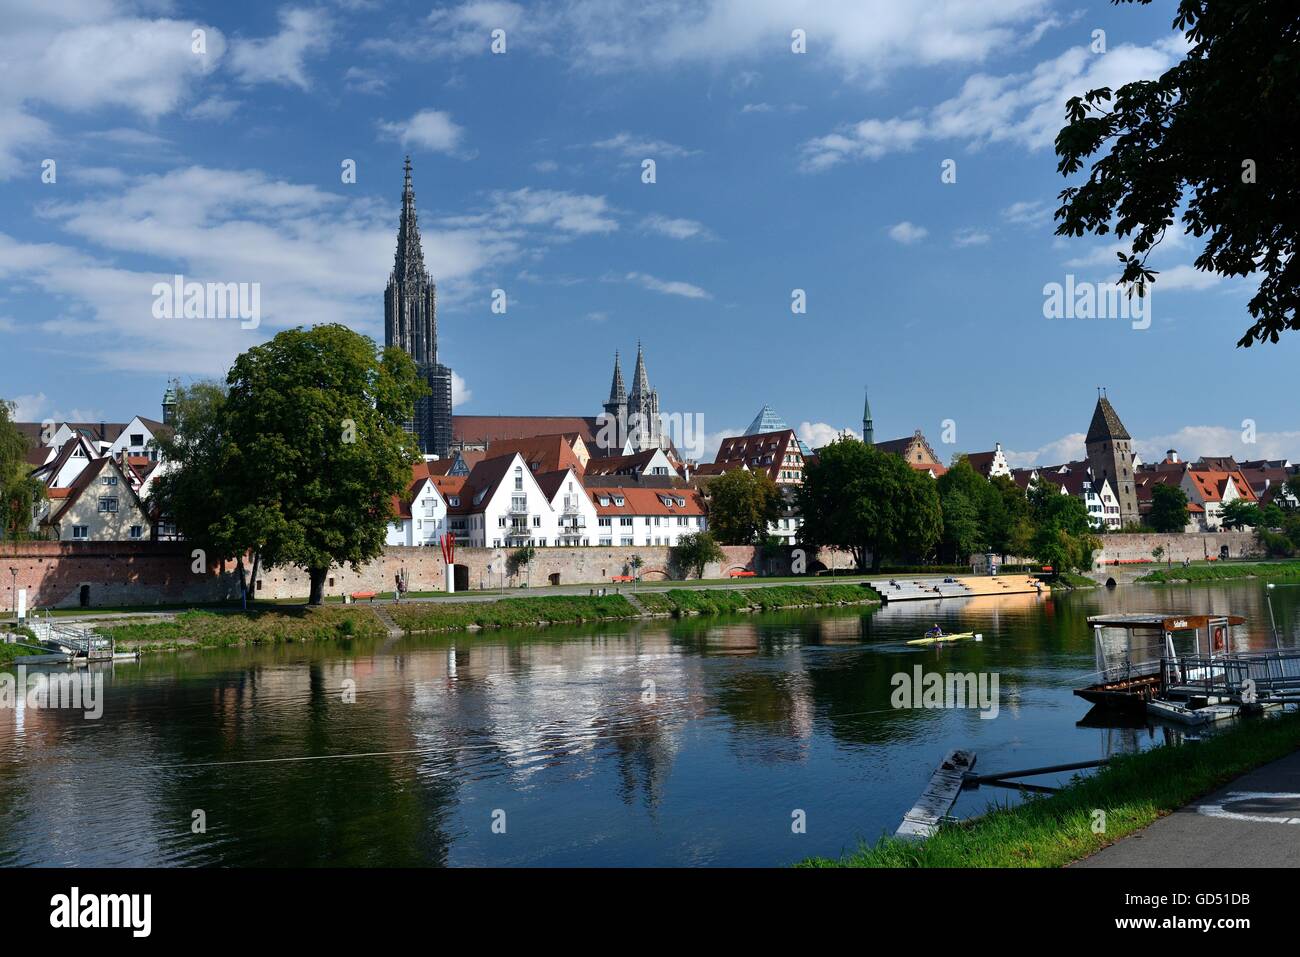 Muenster und Donau, Ulm, Baden-Wuerttemberg, Deutschland, Europa, Blick vom Jahnufer Stock Photo